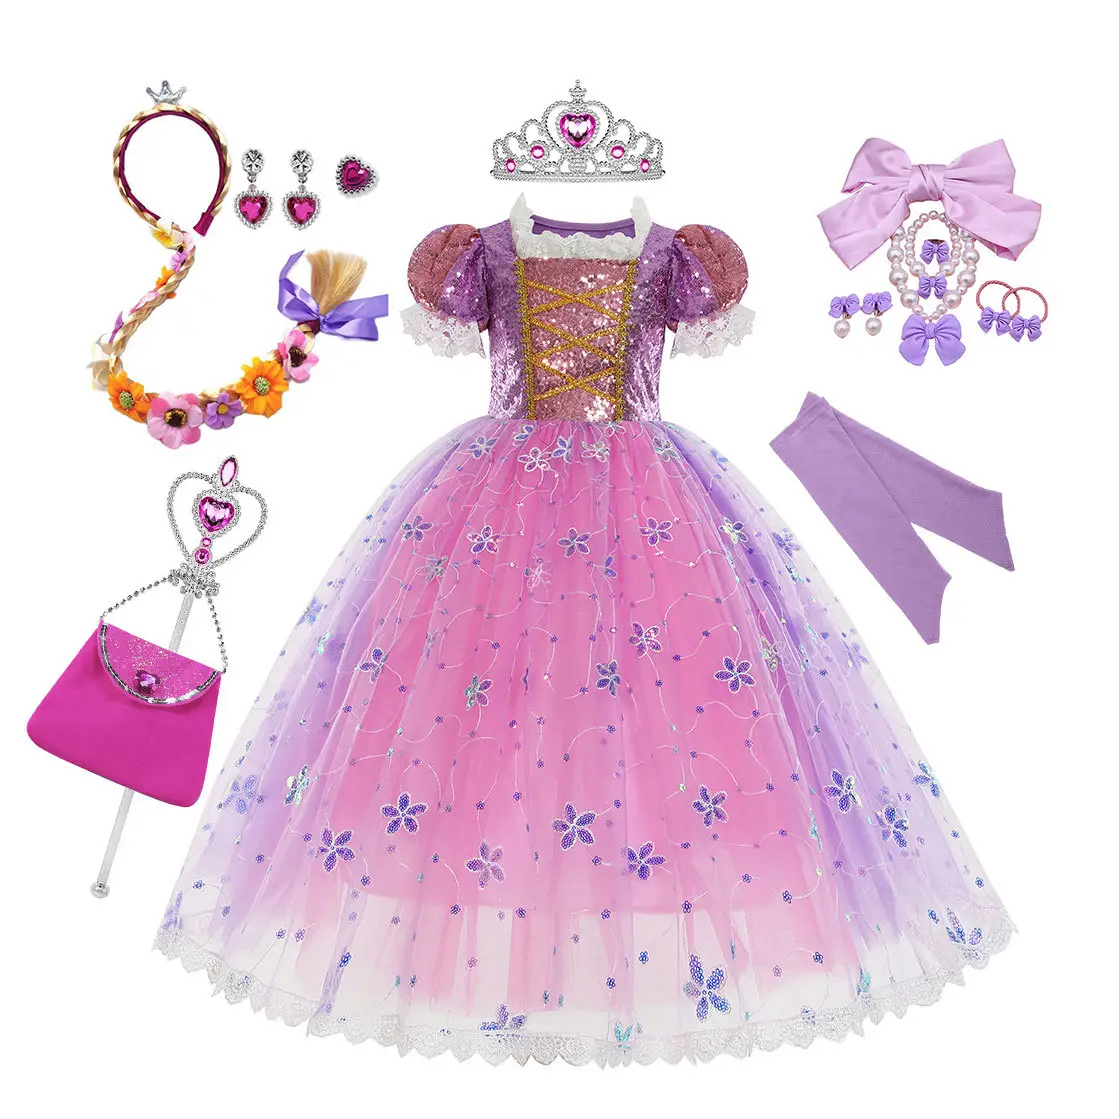 Yeni varış TV & film çocuk kostümleri prenses elbise peruk ve aksesuarları ile doğum günü cadılar bayramı Cosplay için giysi mor